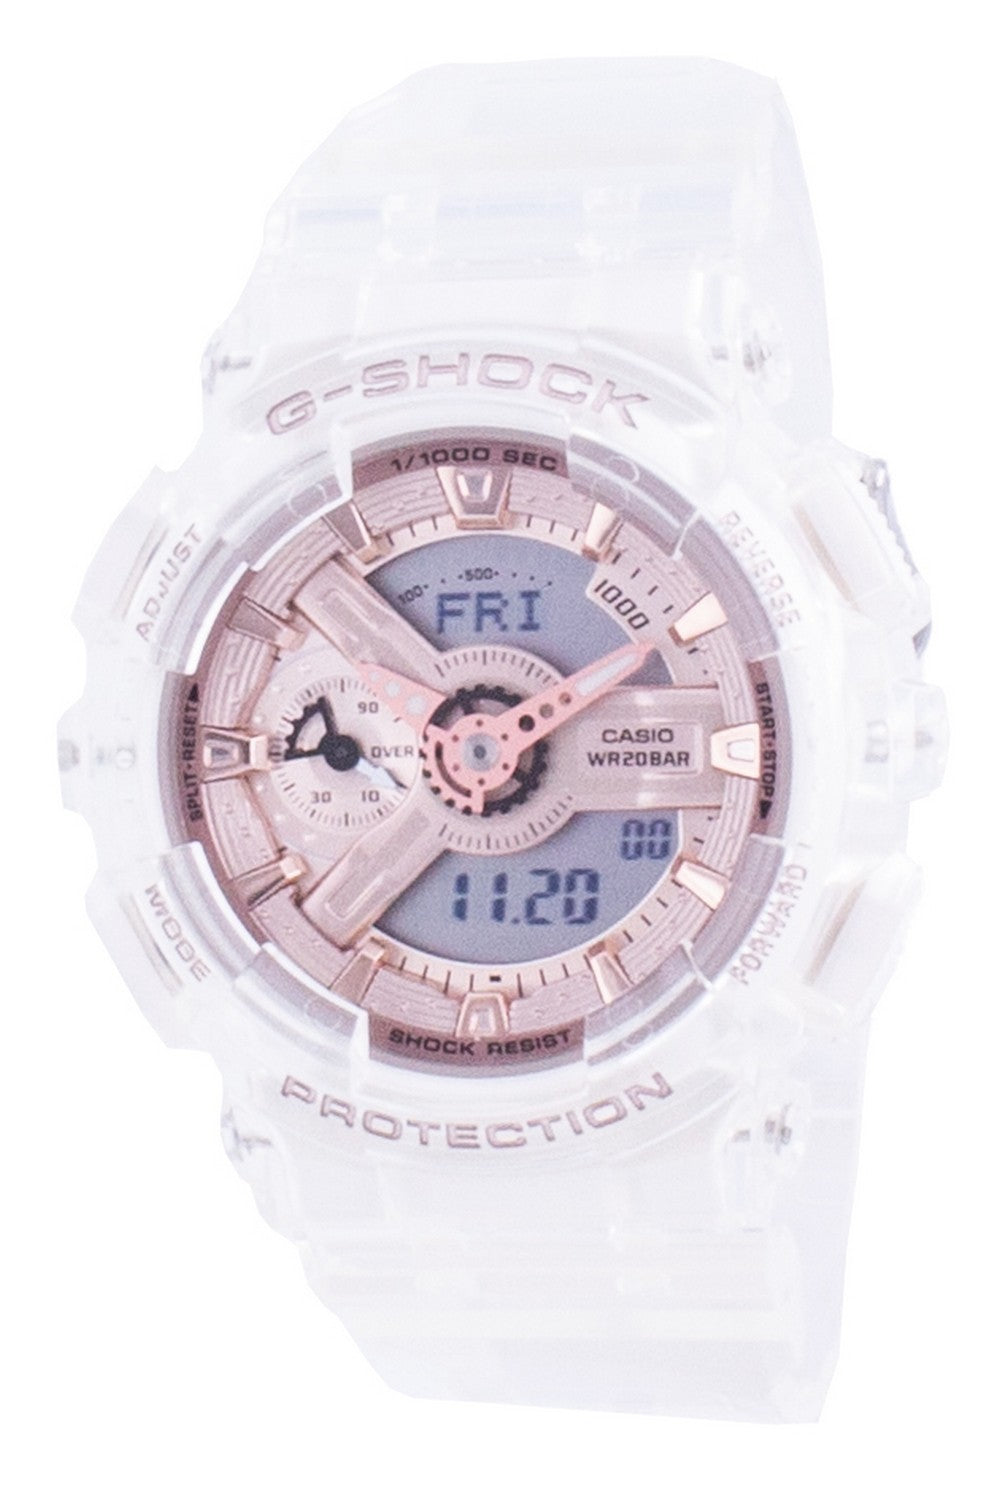 Casio G-shock Neobrite Qaurtz Gma-s110sr-7a Gmas110sr-7 200m Women's Watch